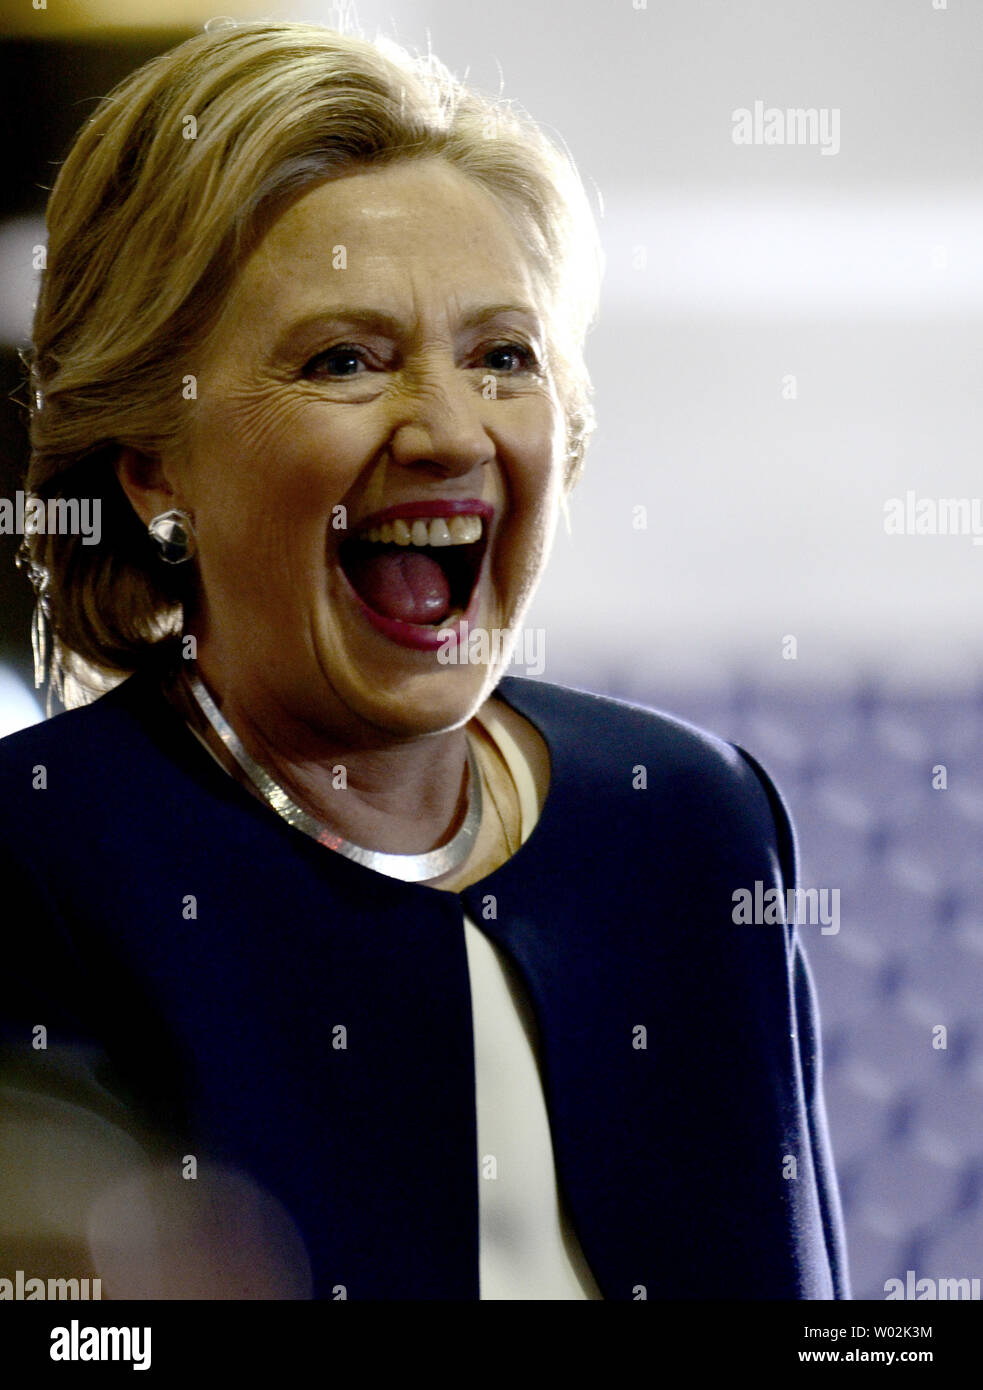 Hahahahahahahaha oh I am just Kidding - Hillary Clinton Laughs